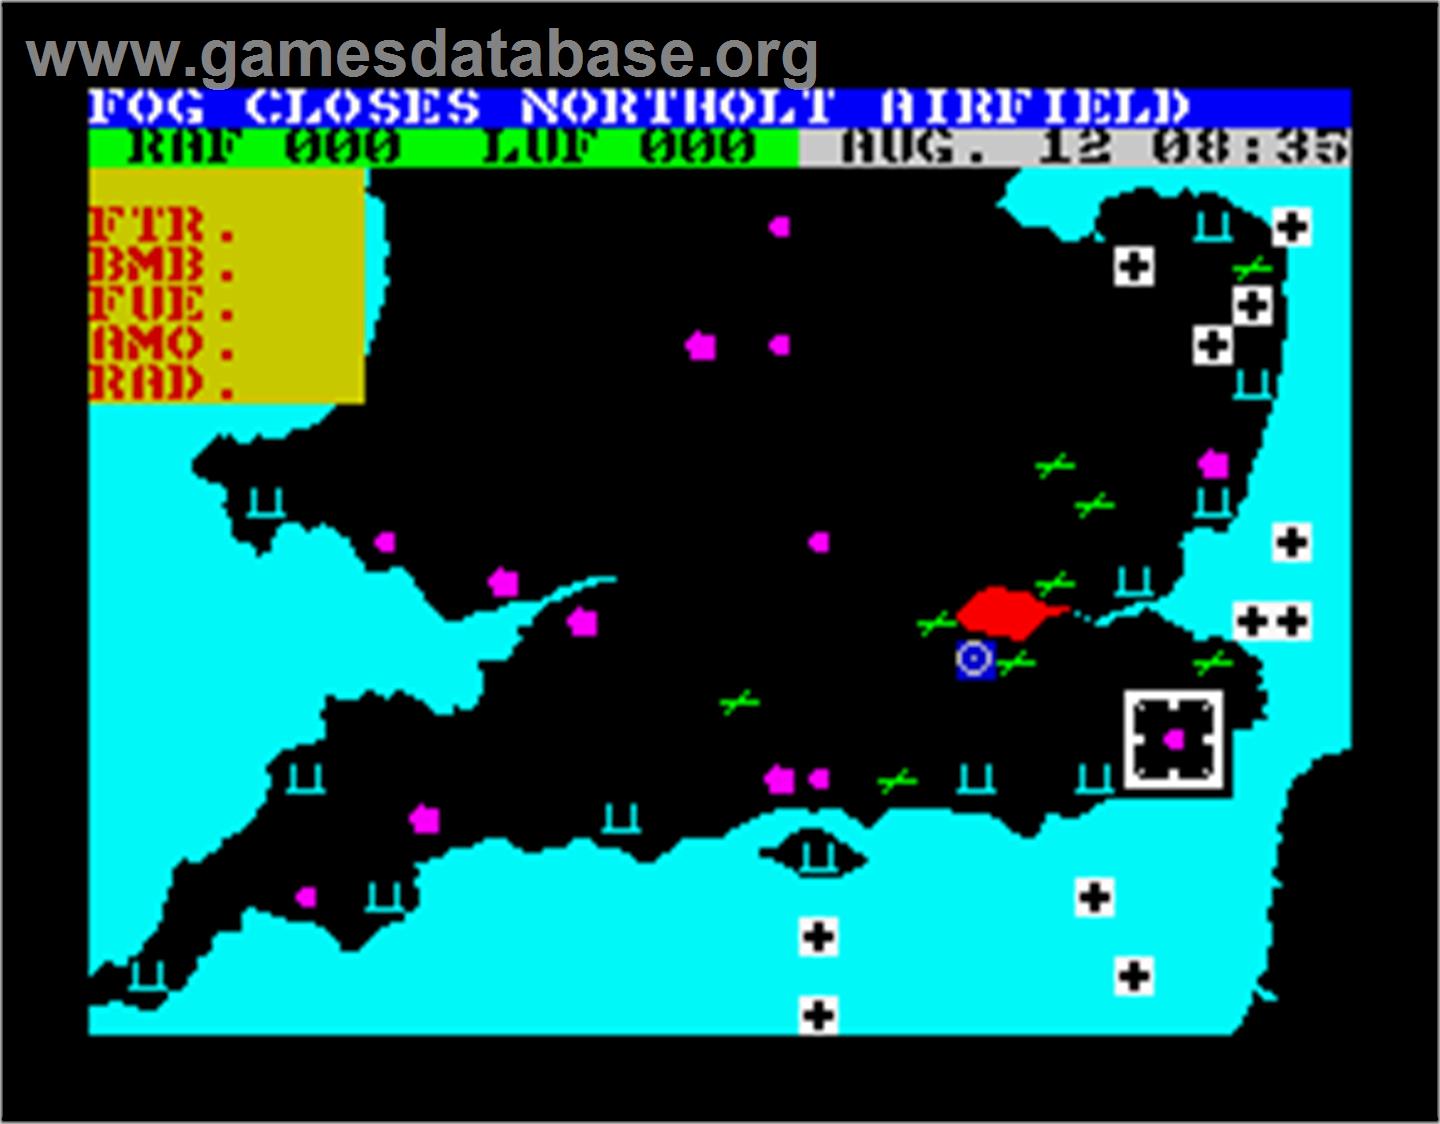 Battle of Britain - Sinclair ZX Spectrum - Artwork - In Game